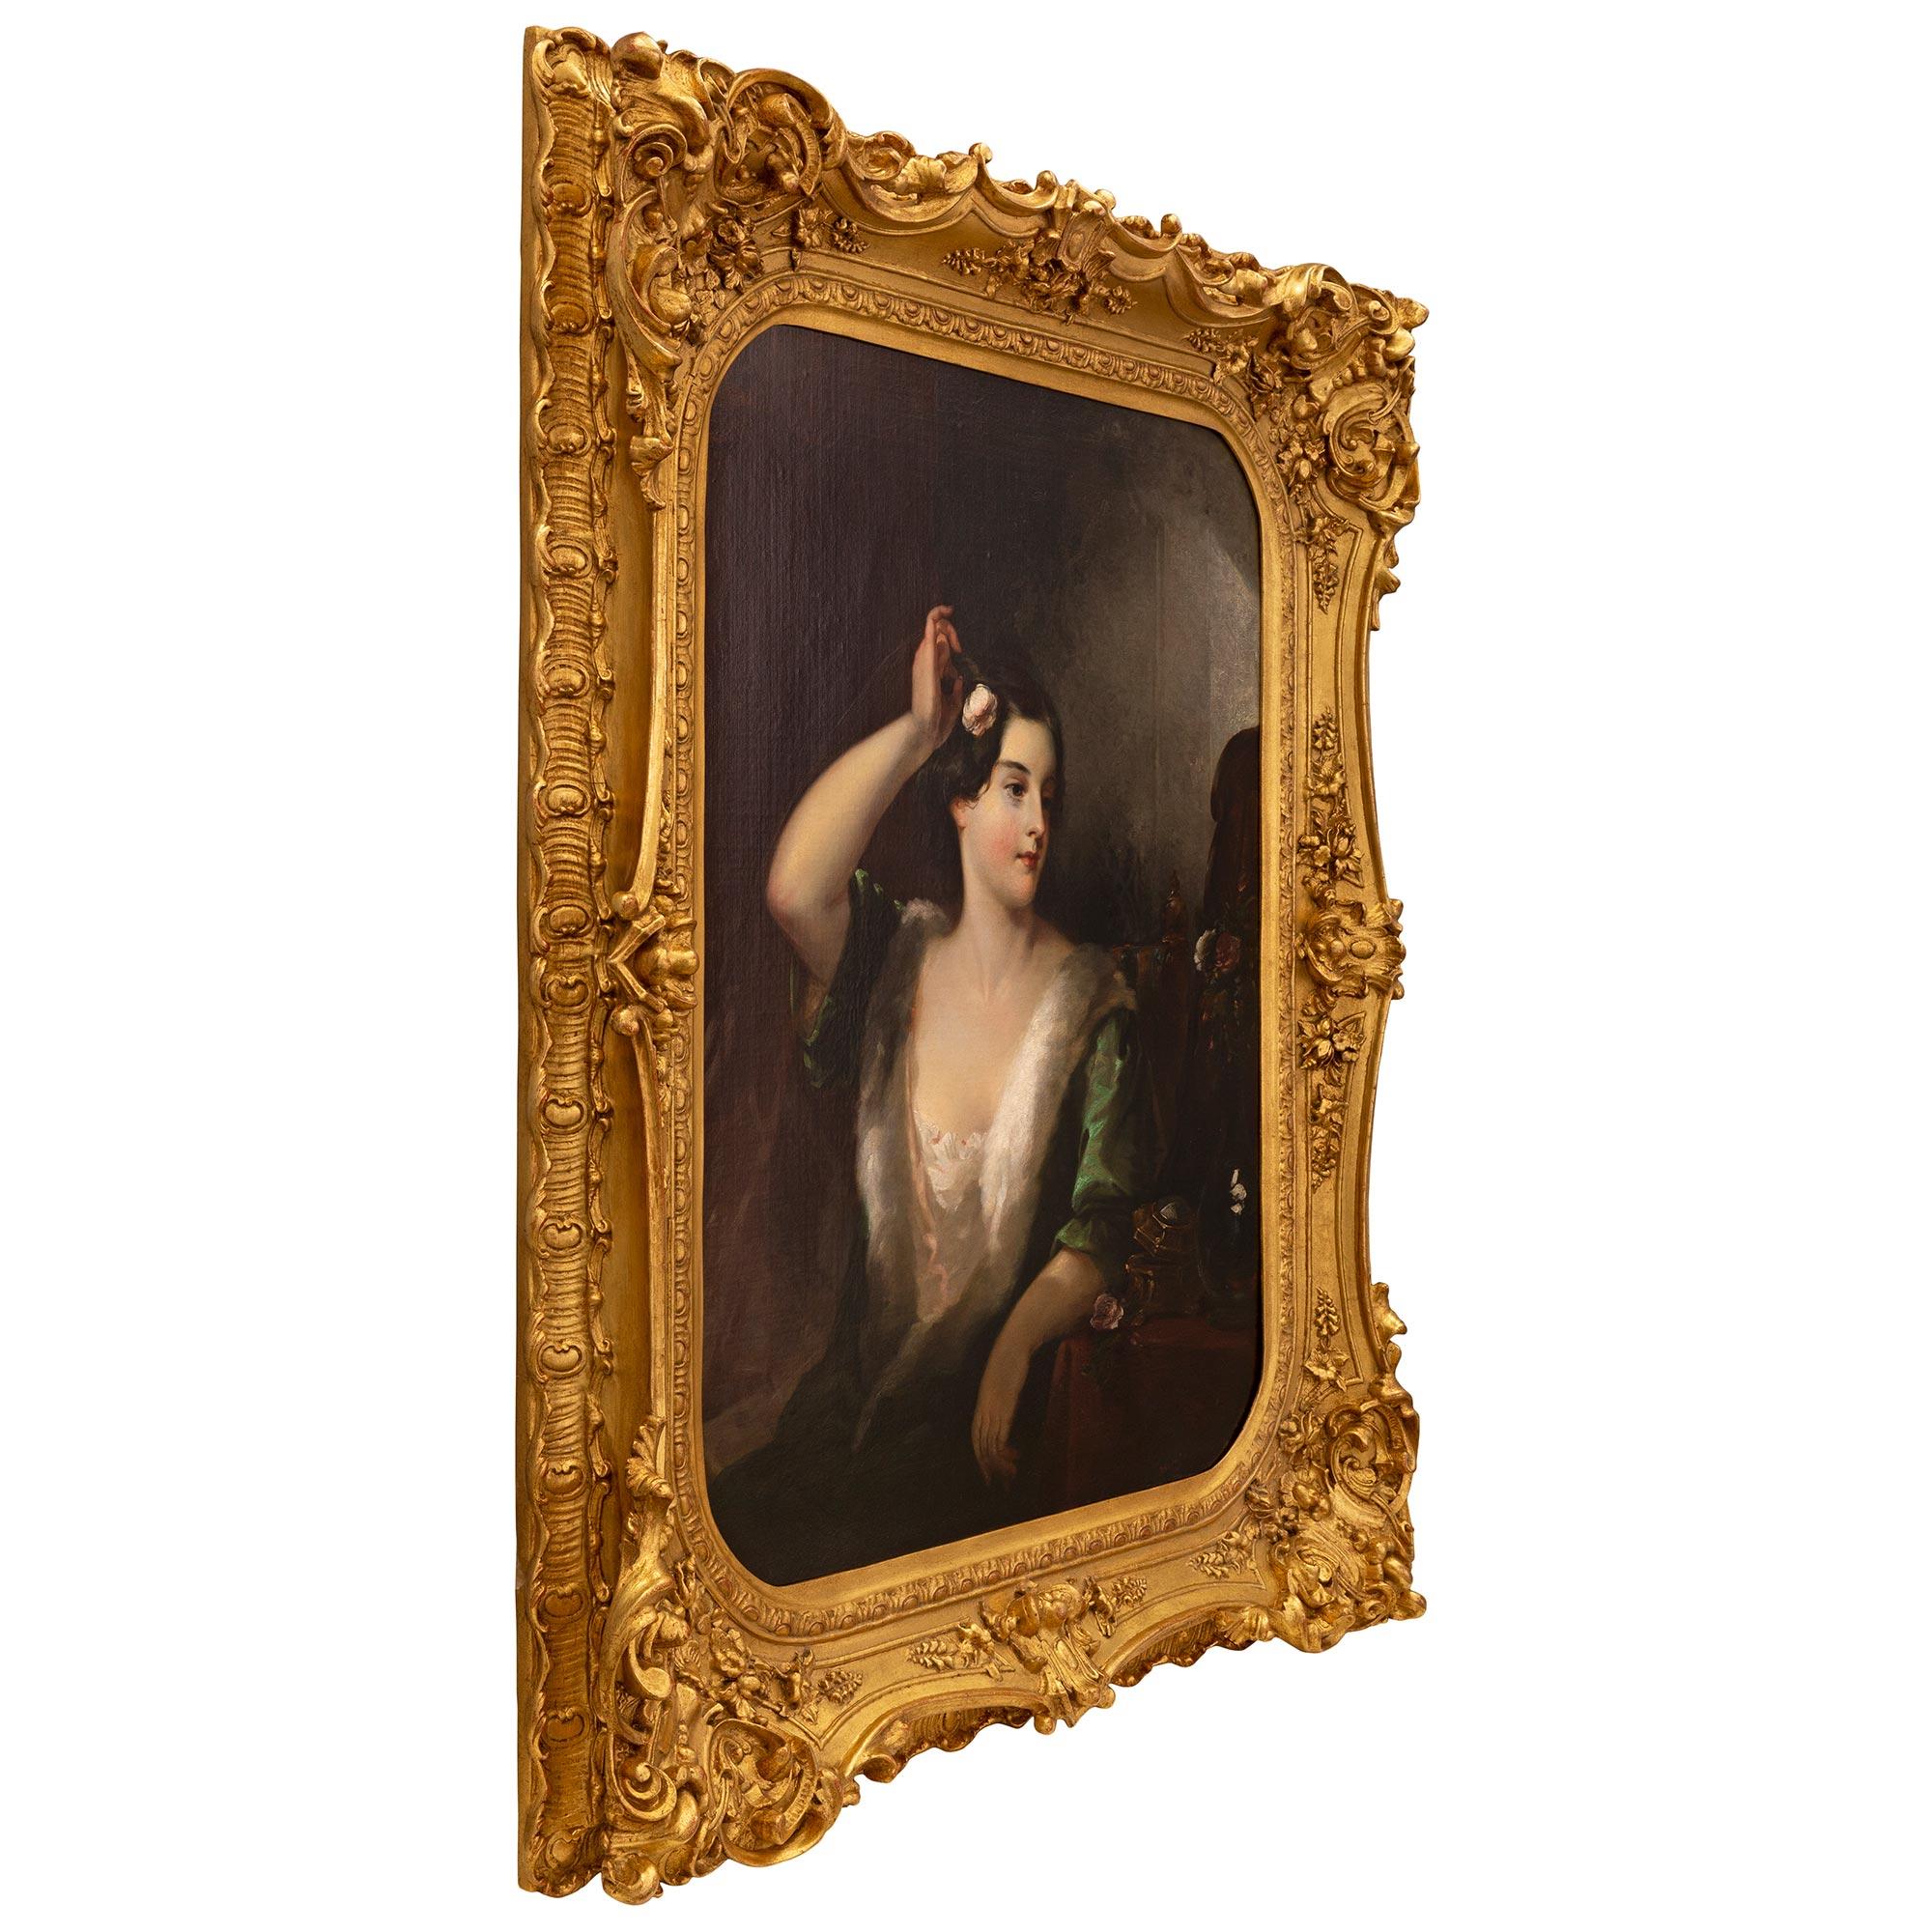 Eine hervorragende und außergewöhnlich hohe Qualität Continental 19. Jahrhundert Öl auf Leinwand Gemälde in seinem ursprünglichen Rahmen. Das Gemälde zeigt eine schöne junge Dame in einem eleganten Kleid mit Hermelinbesatz. Sie stützt sich auf ihren